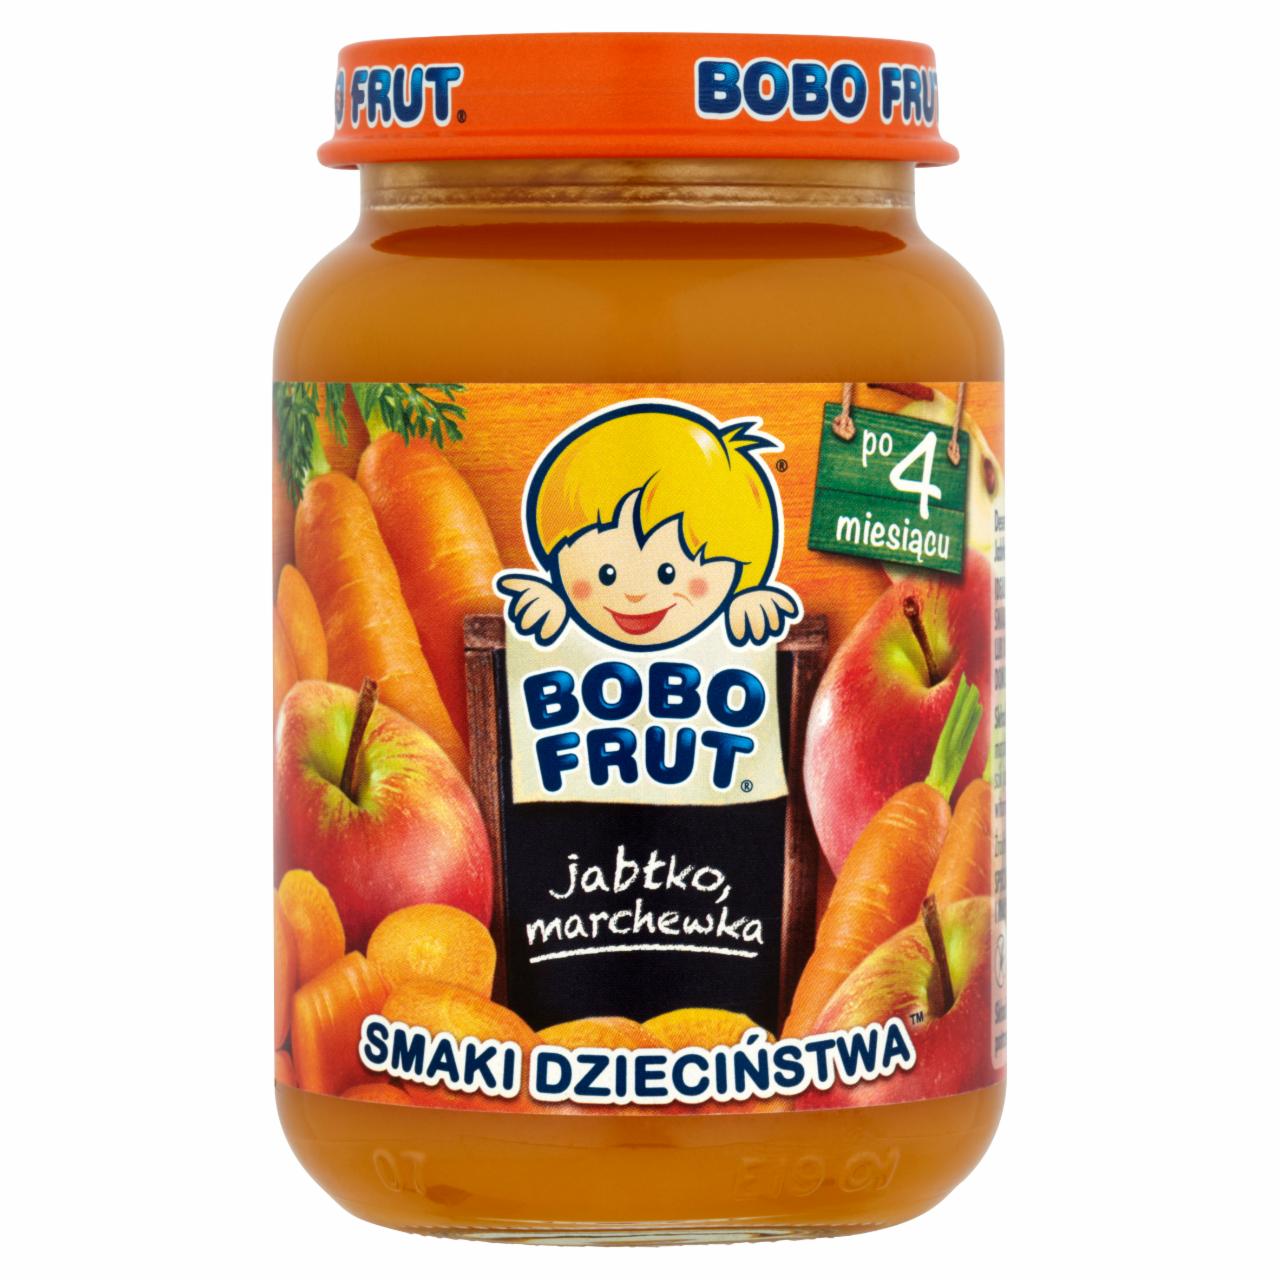 Zdjęcia - Bobo Frut Smaki Dzieciństwa Jabłko marchewka po 4 miesiącu 185 g